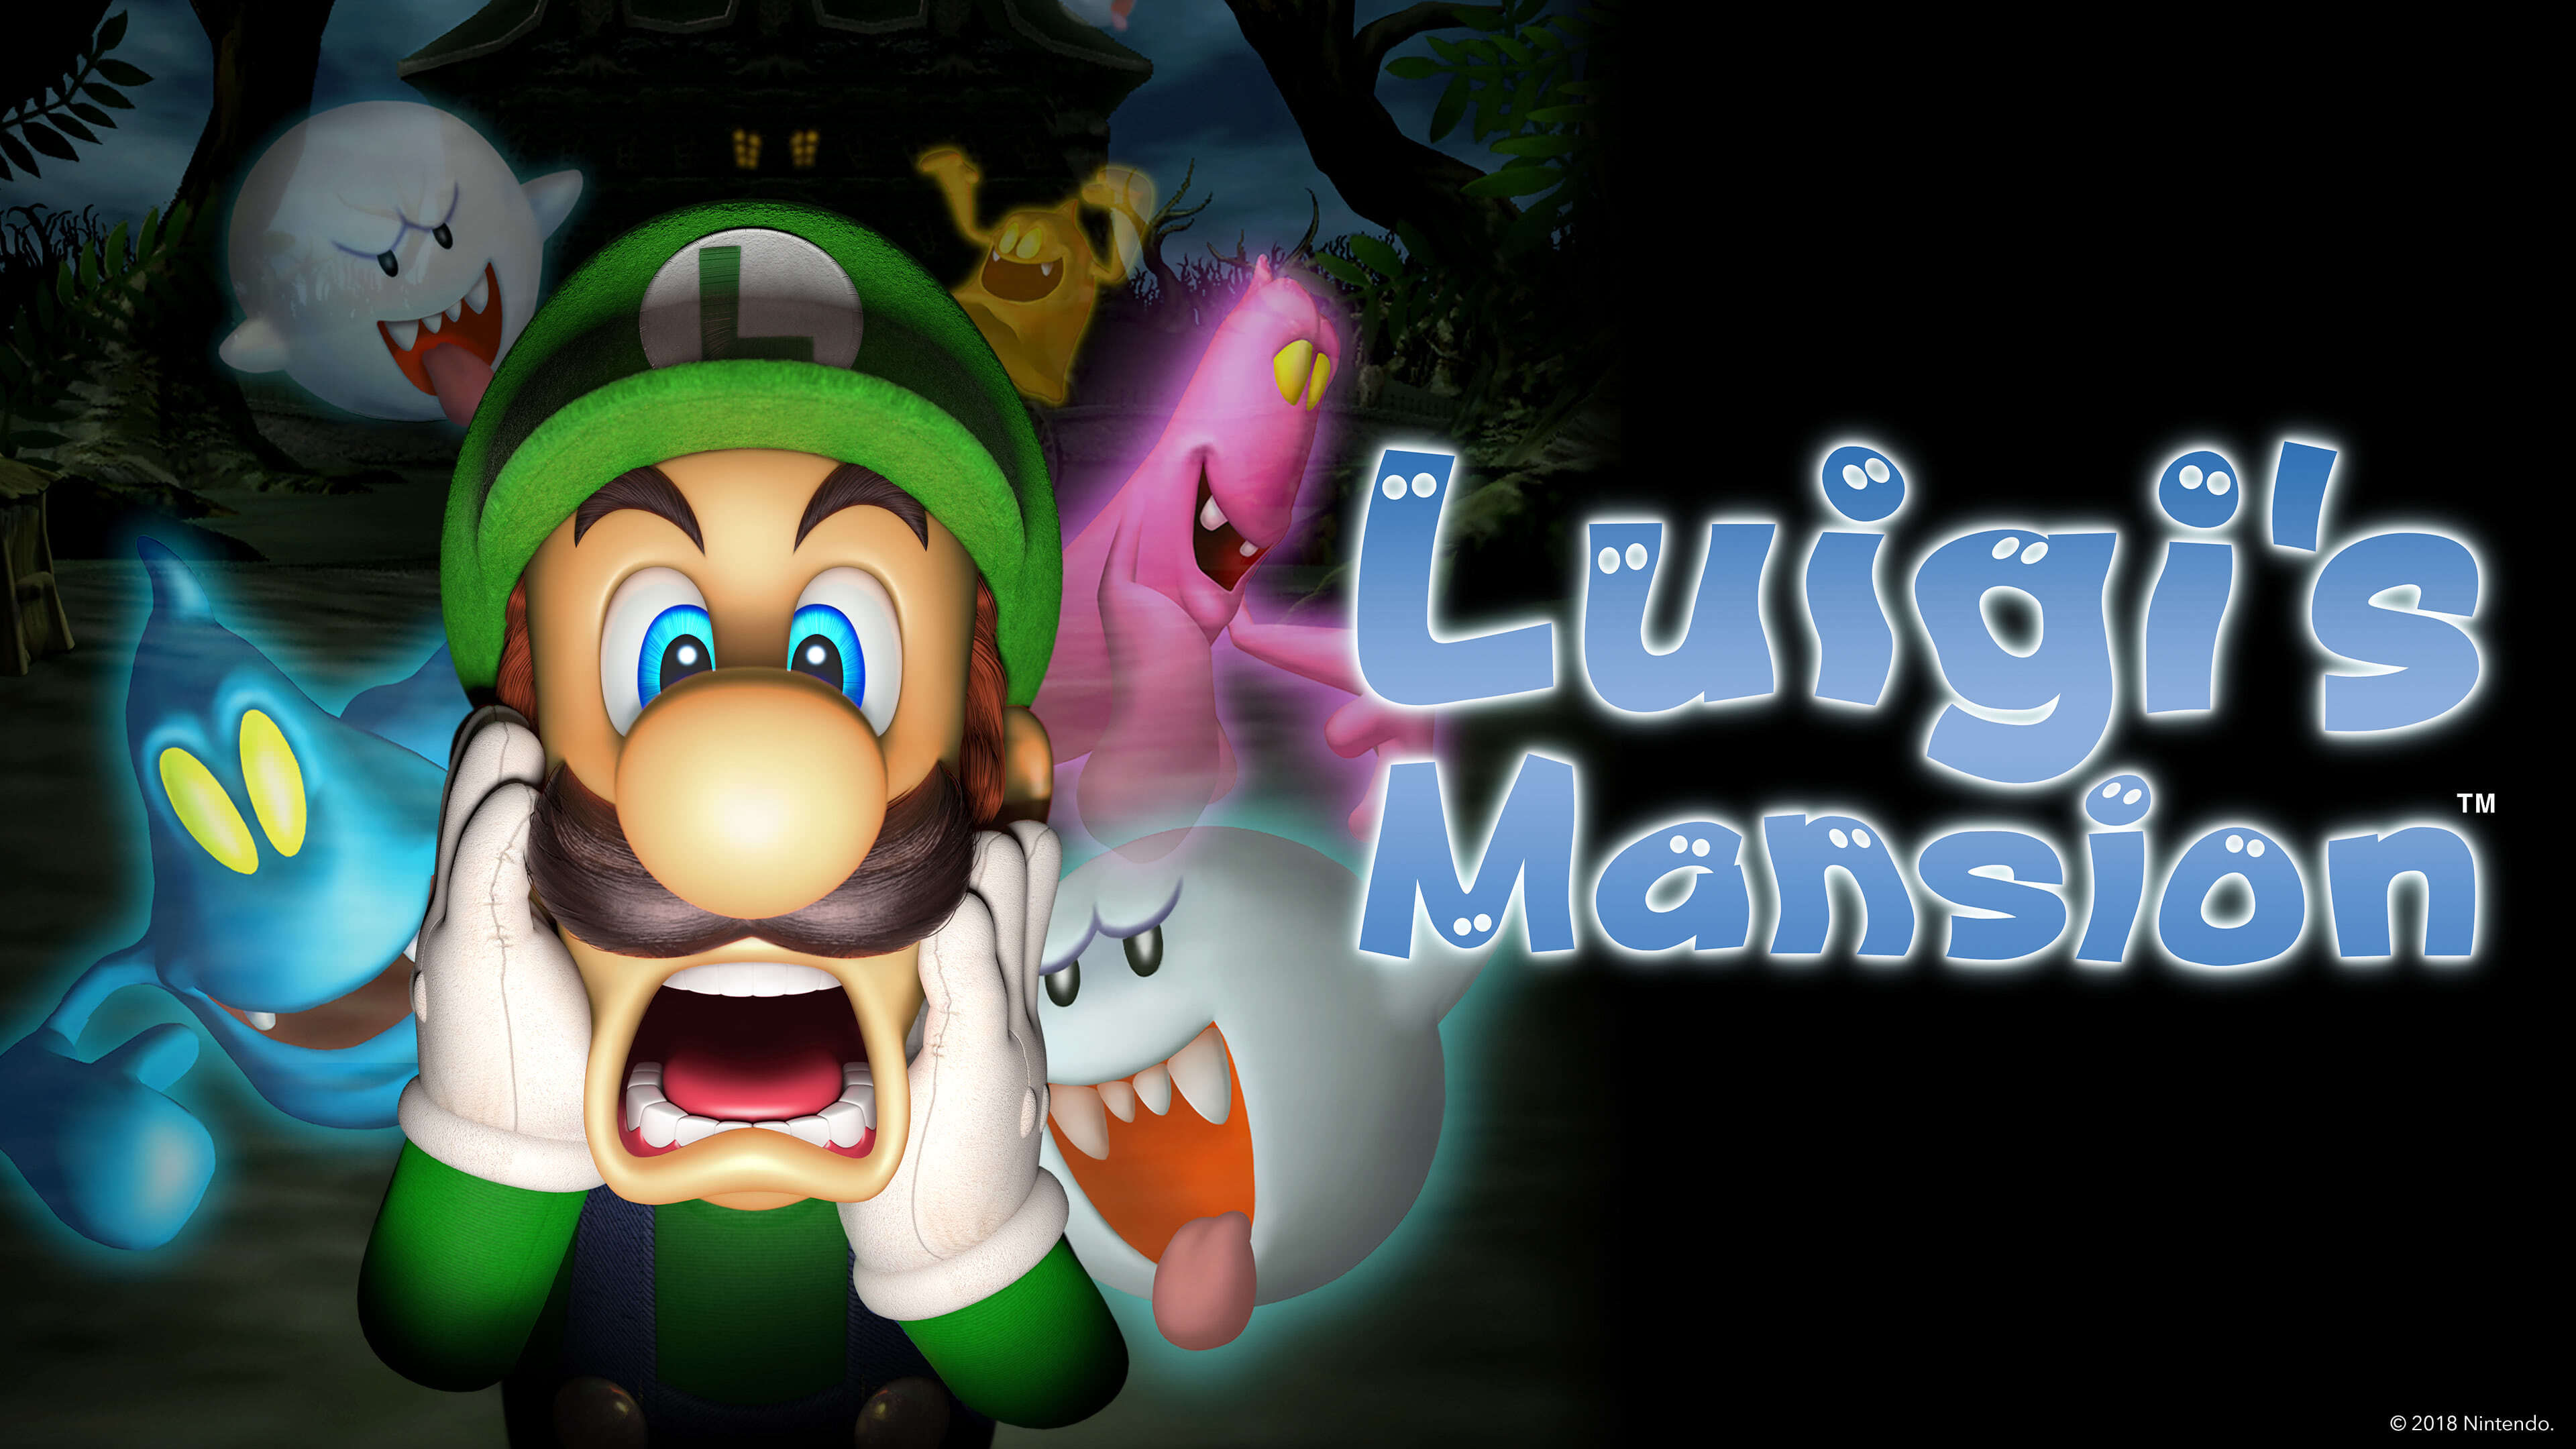 Luigis Mansion 3 UHD 4K Wallpaper | Pixelz